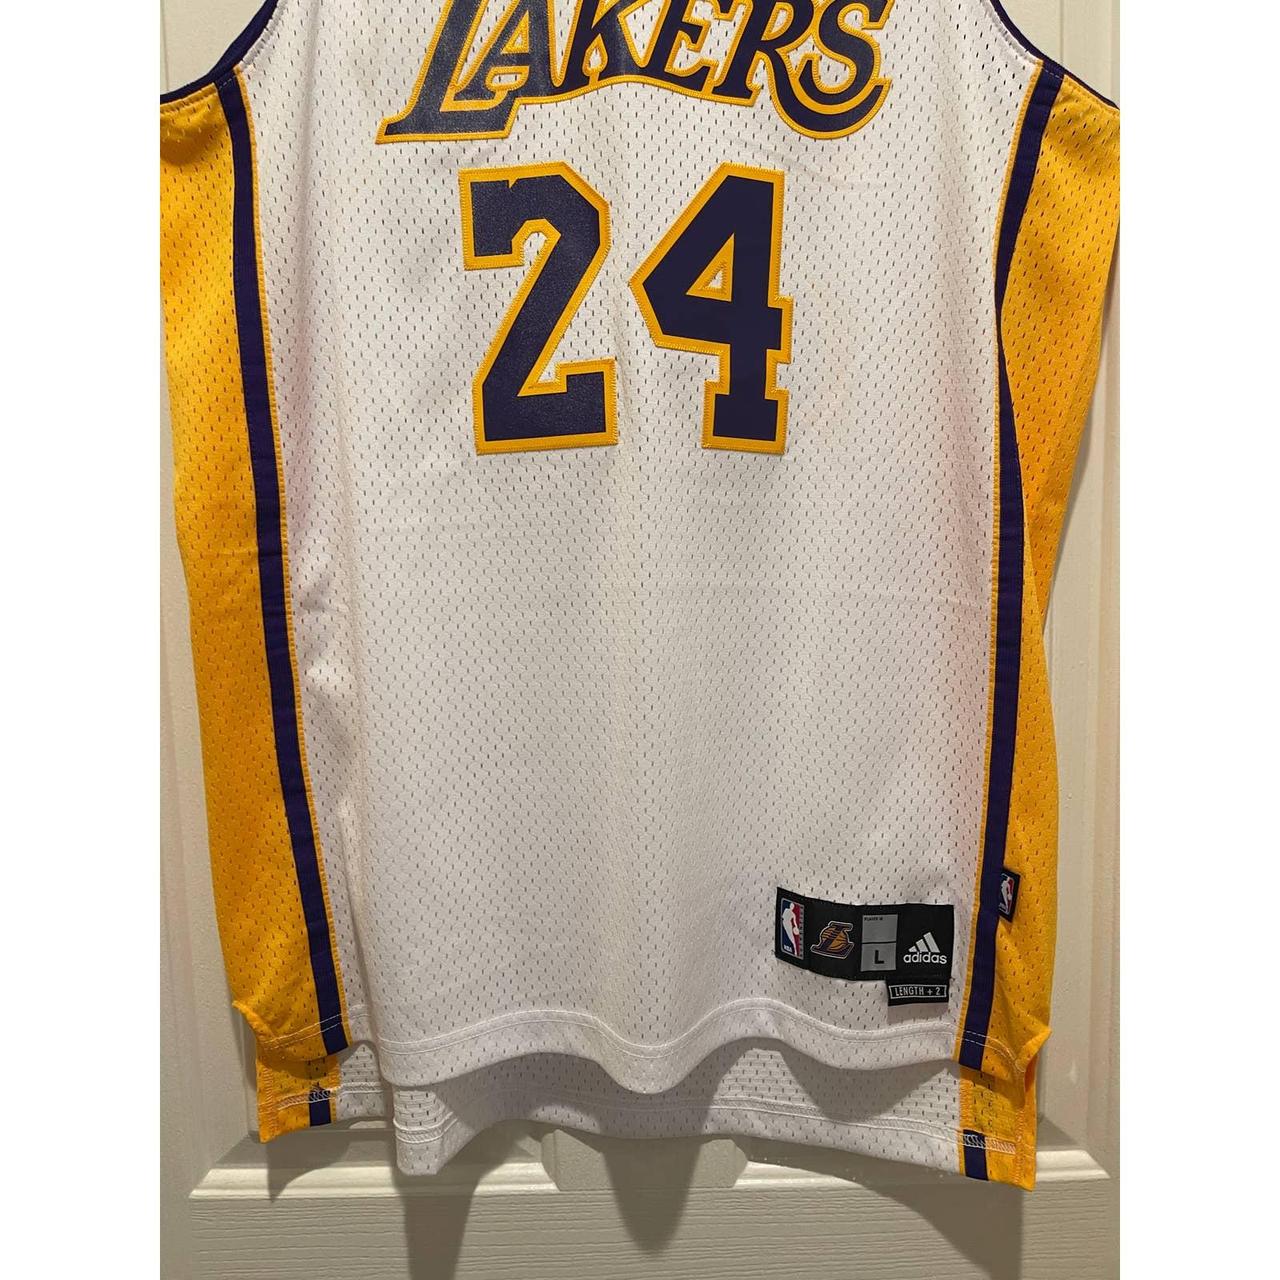 Kobe Bryant Adidas Lakers jersey #ripmamba #lakers - Depop